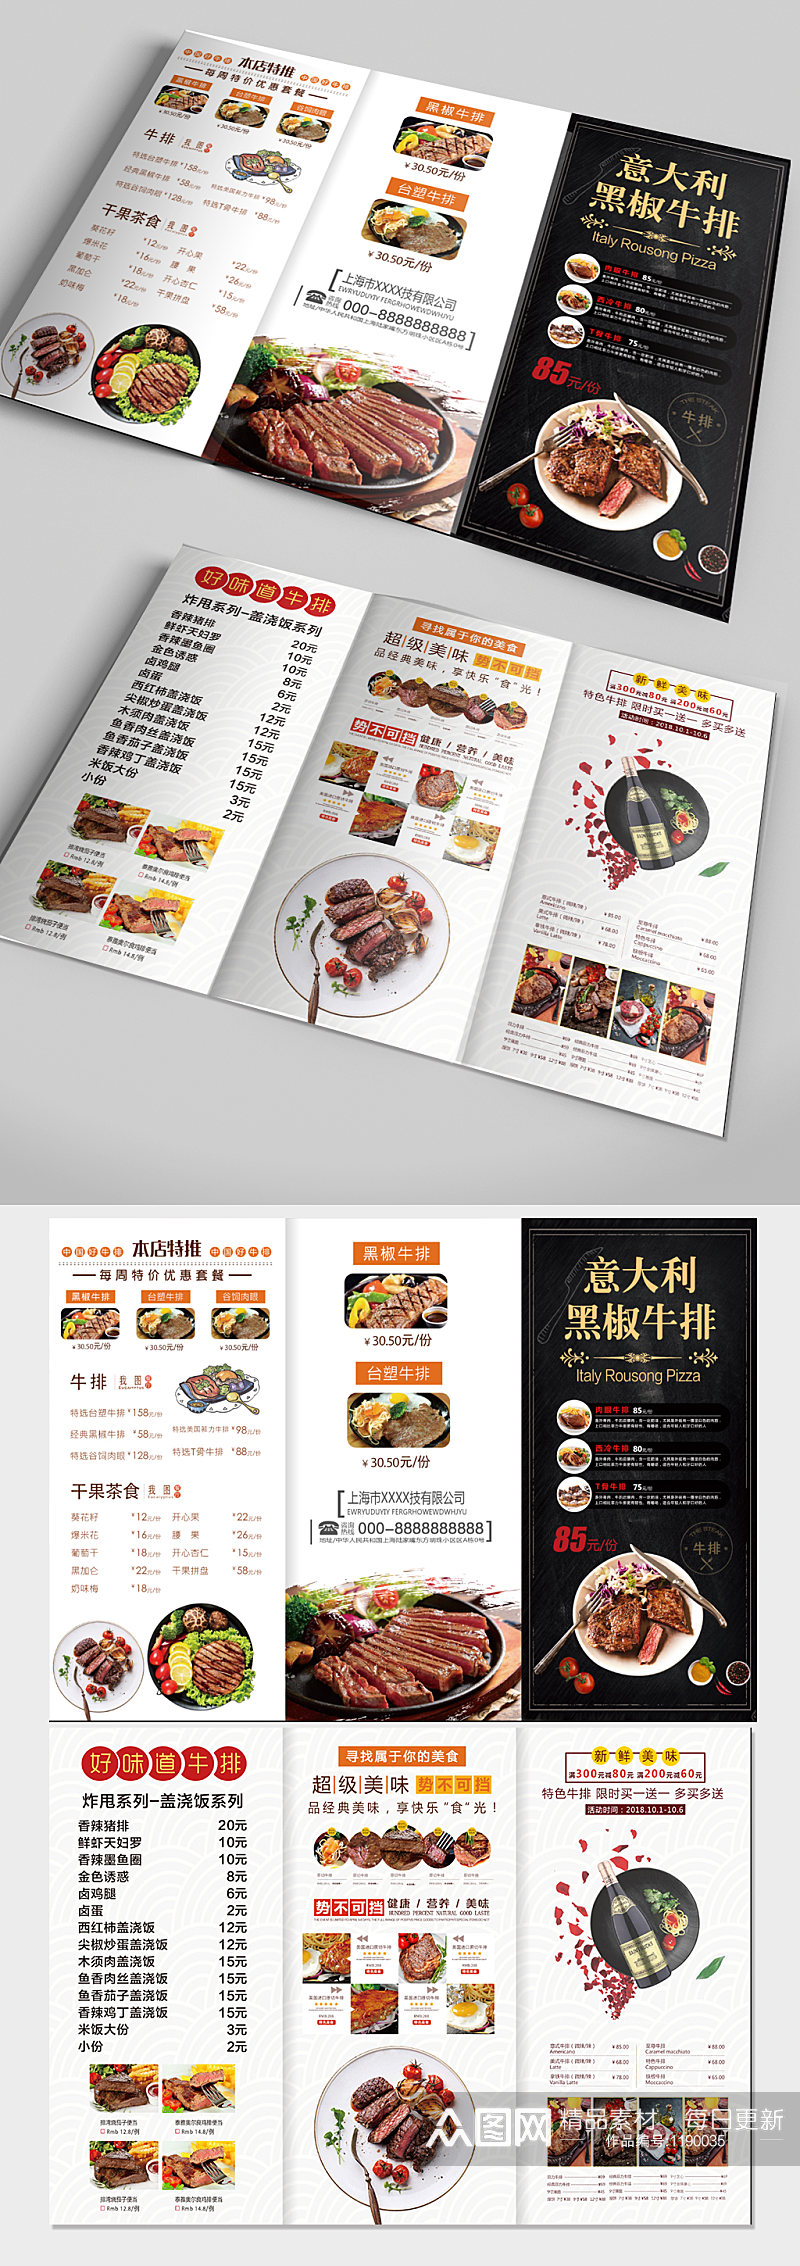 中餐饭店菜单宣传折页 三折页素材